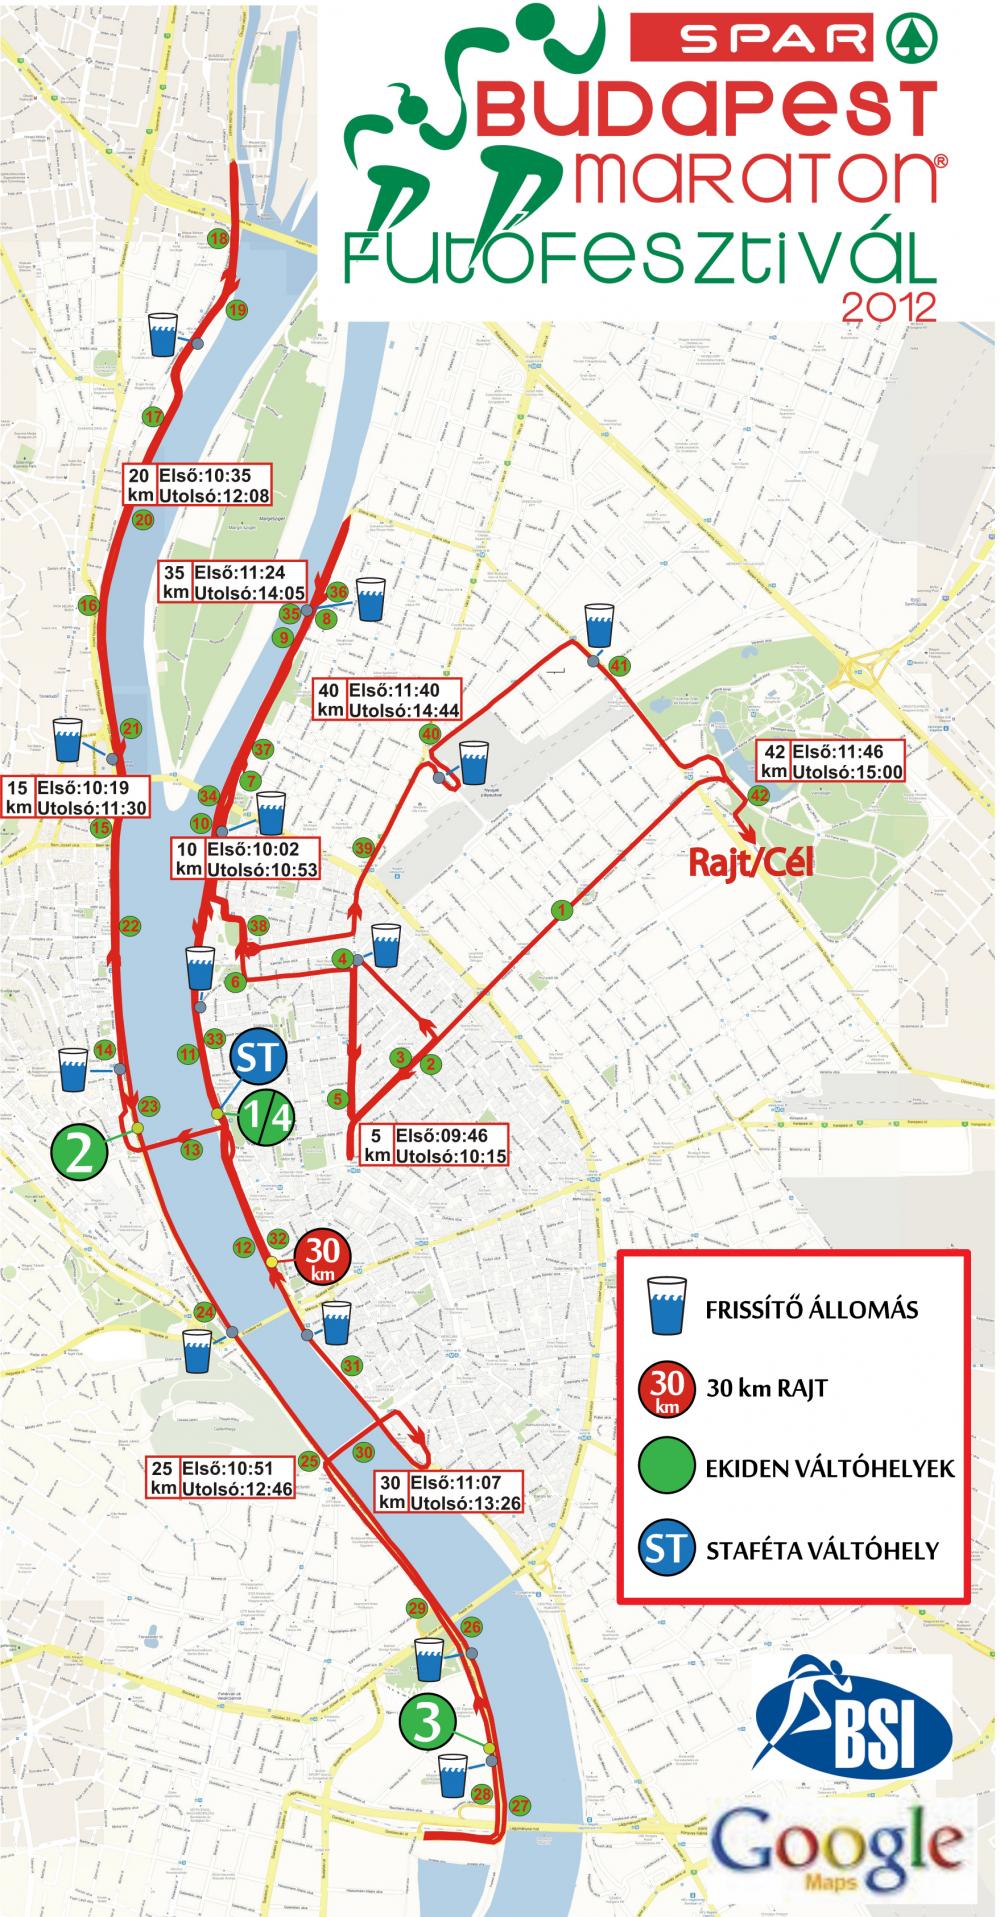 budapest útvonal térkép 27. Spar Budapest Maraton   térkép   Futanet.hu budapest útvonal térkép